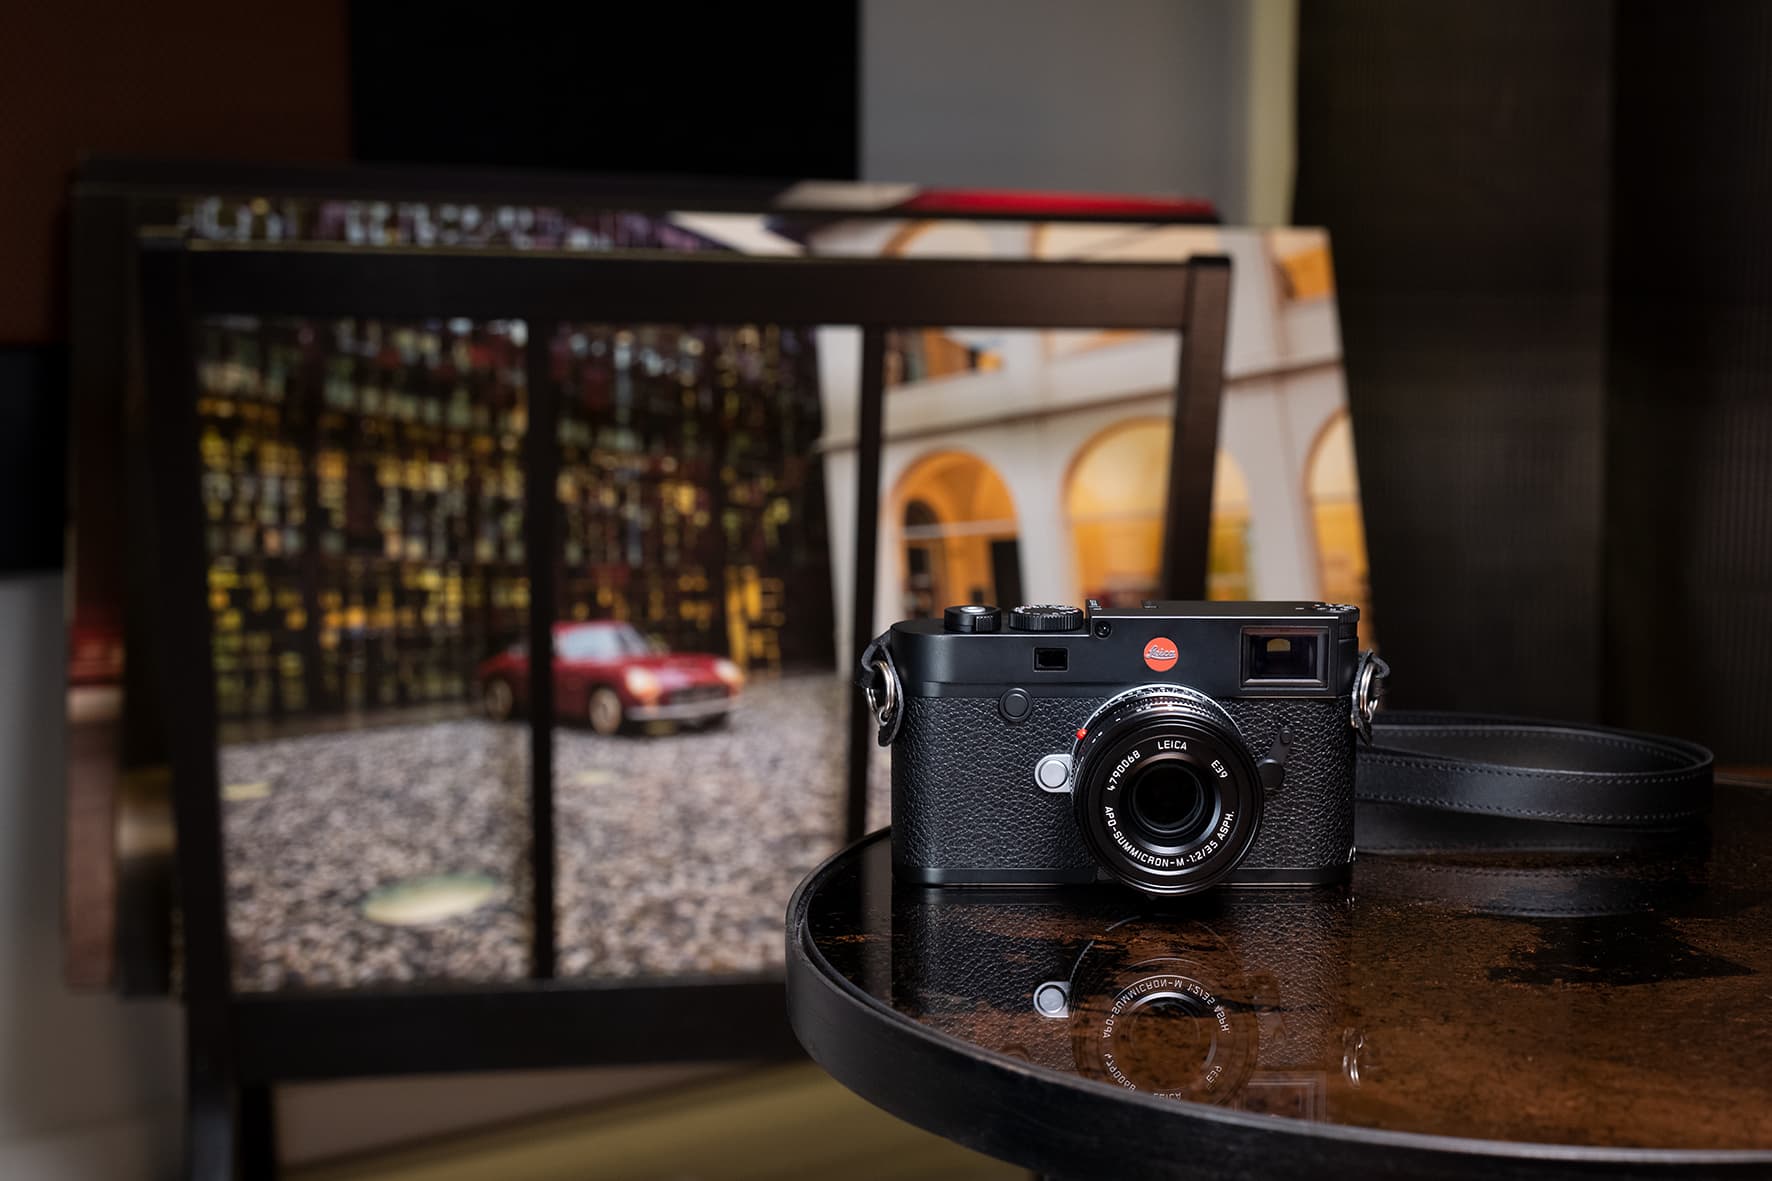 Leica ra mắt ống kính APO Summicron-M 35mm F2 ASPH, giá 209 triệu